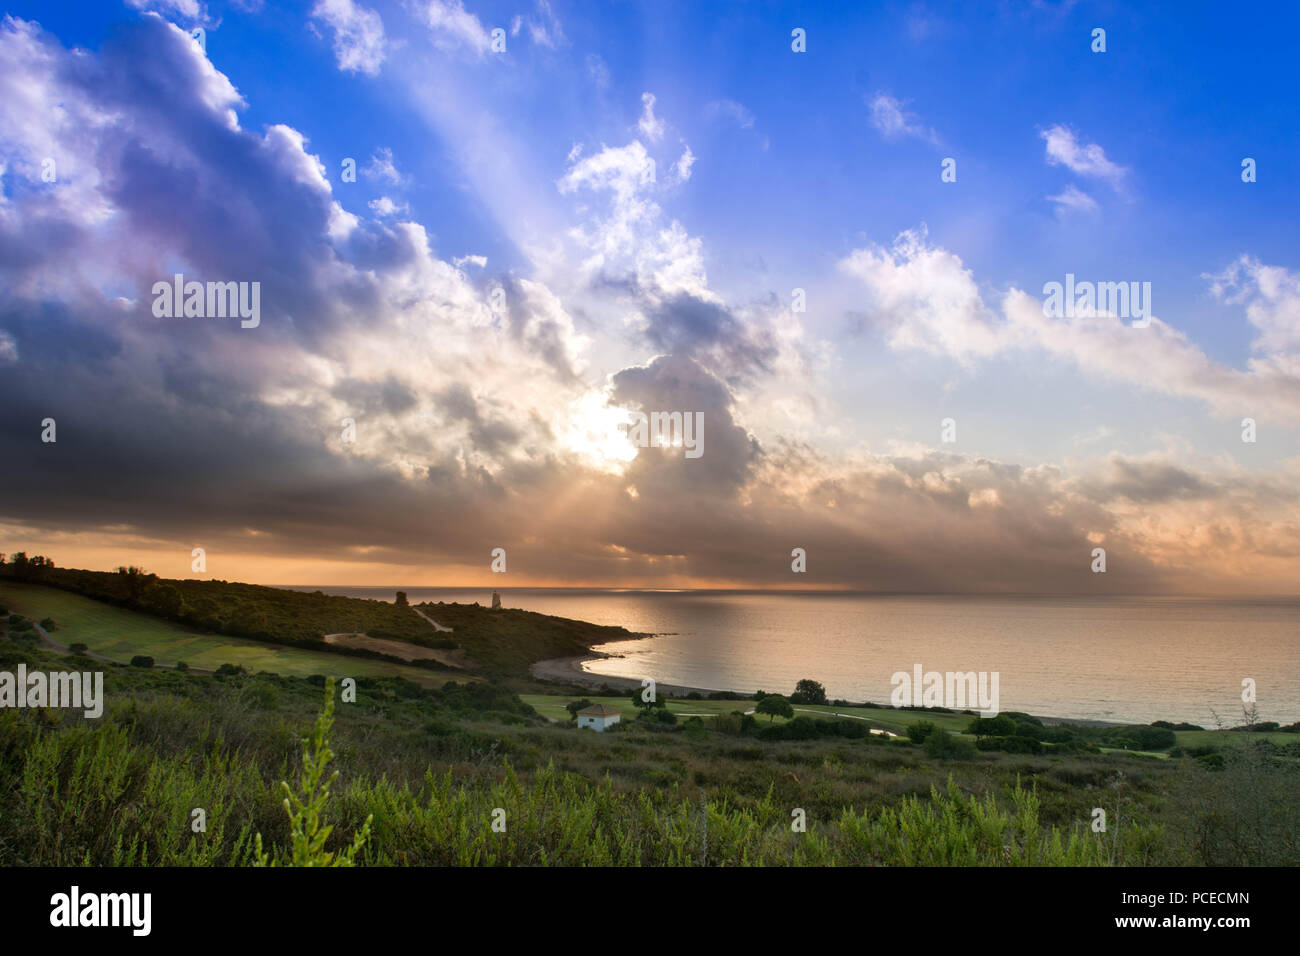 Lighthouse locate at Beach and golf field in La Alcaidesa, Costa del Sol, Spain Stock Photo